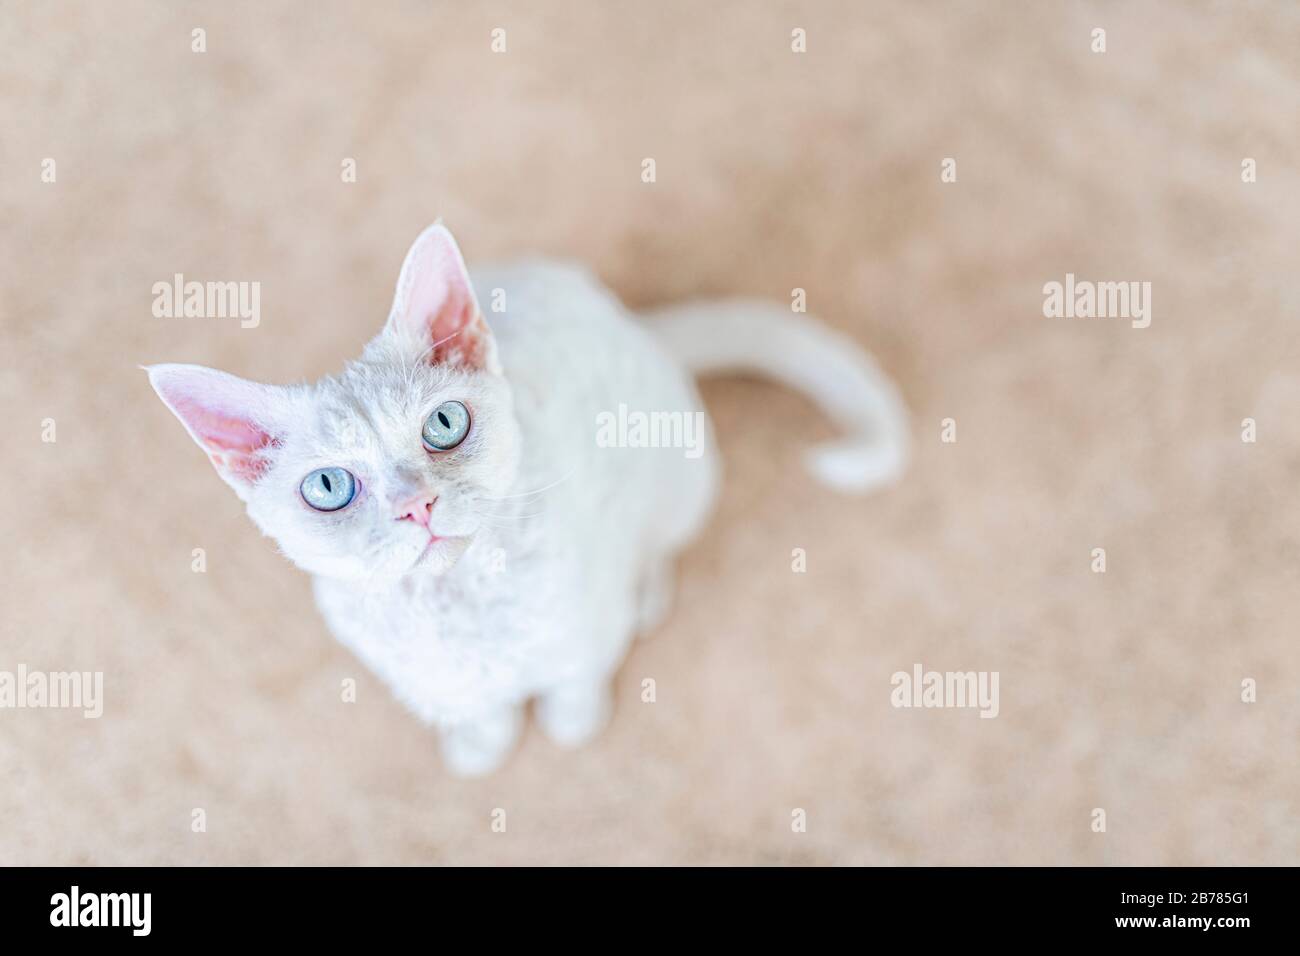 Un gatto bianco con uno sguardo bossy, guardando verso l'alto. Visto dall'alto e il gatto sta guardando nella fotocamera. Il giovane gatto è un Devon Rex bianco purea. Foto Stock